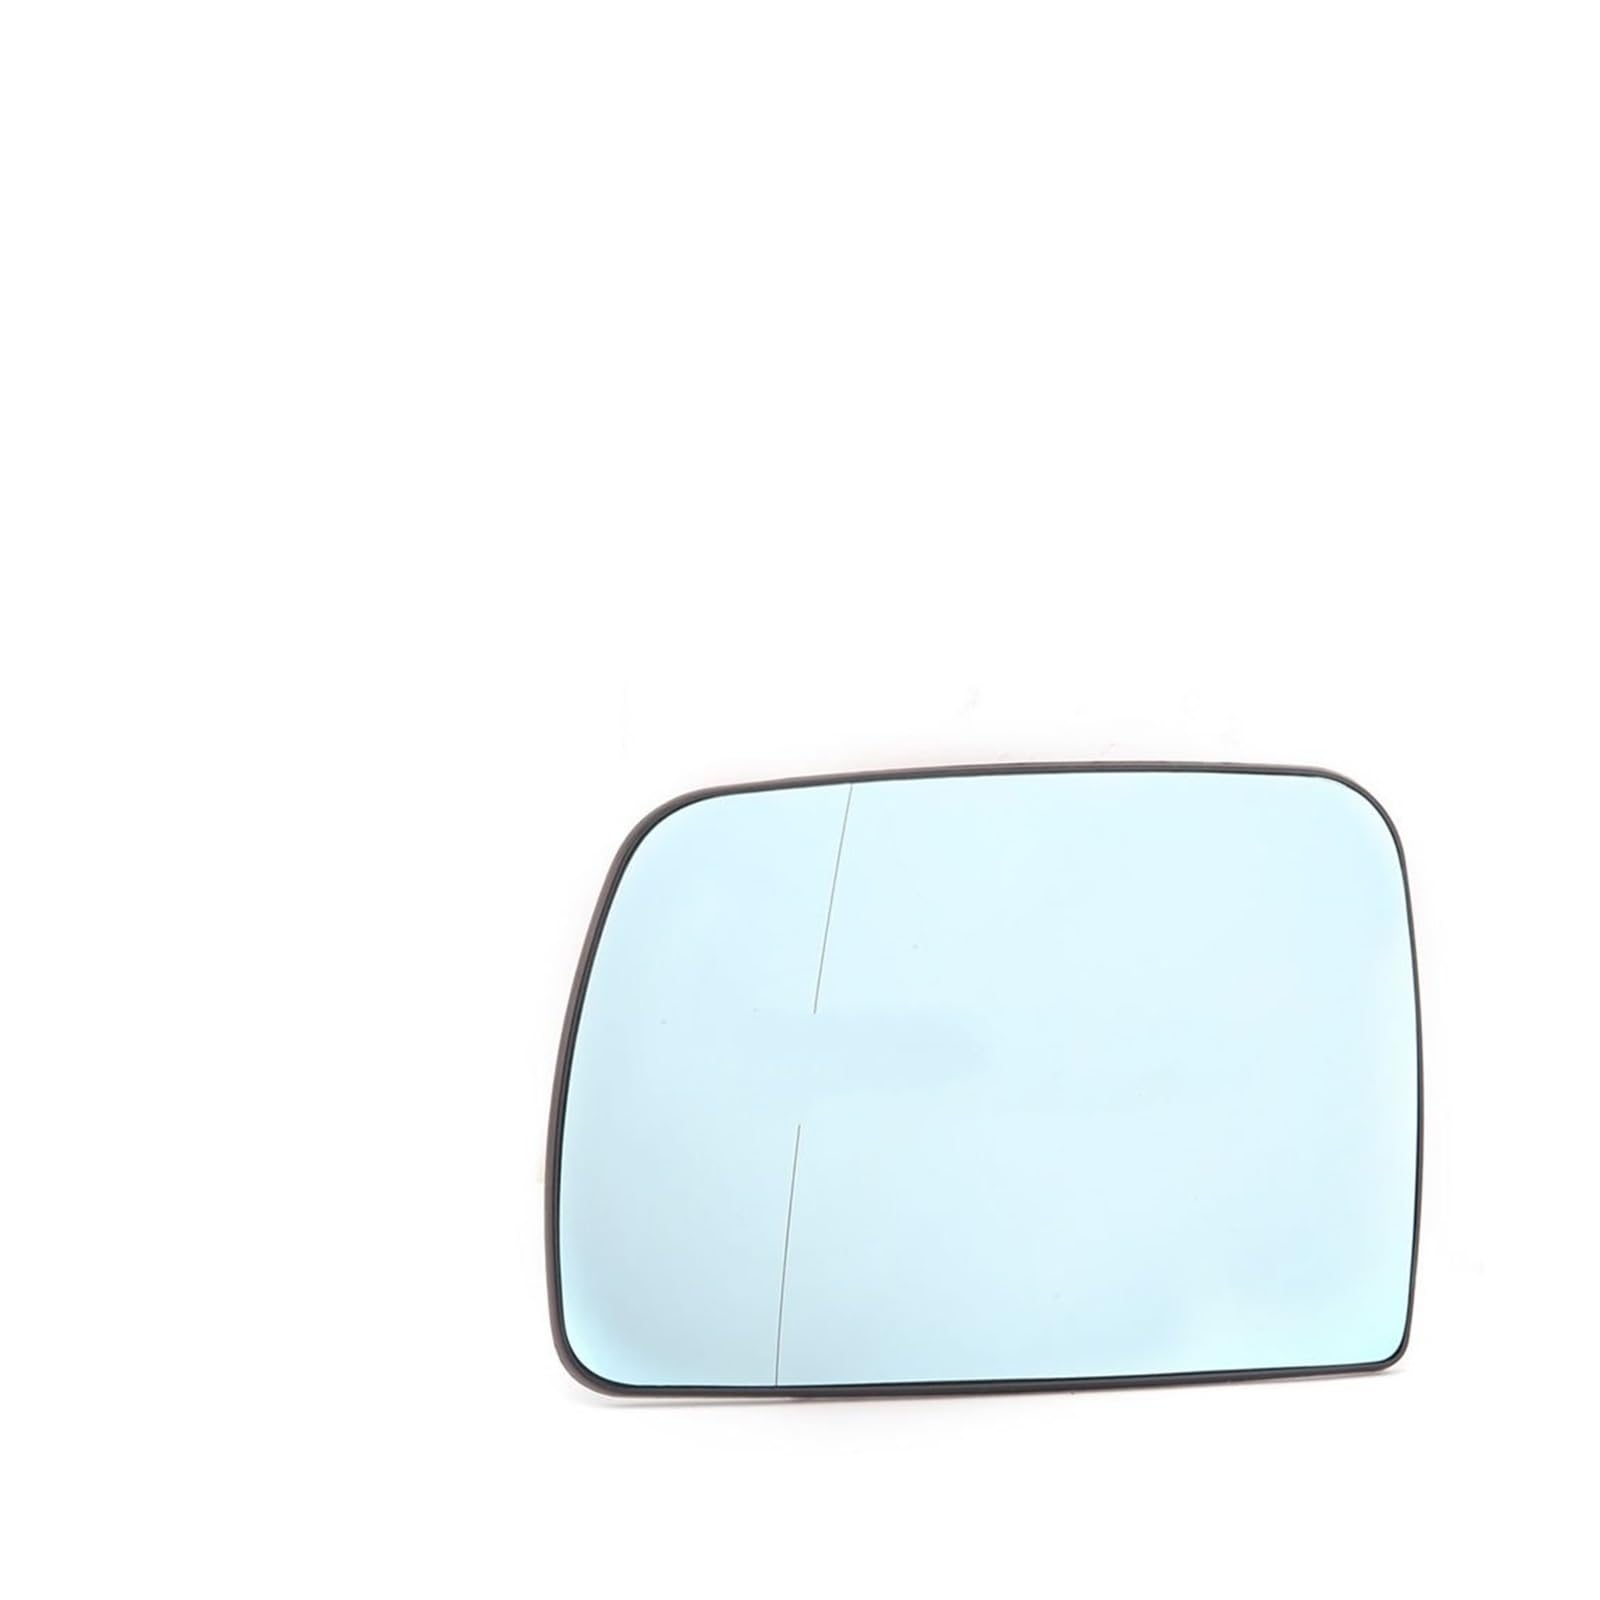 Spiegelglas Für E53 Für X5 1999-2006 Beheizte Seite Spiegel Glas Tür Flügel Rückansicht Rückspiegel Glas Objektiv Zubehör 51168408797 Rückfahrglas (Color : L mirror) von Sukwa